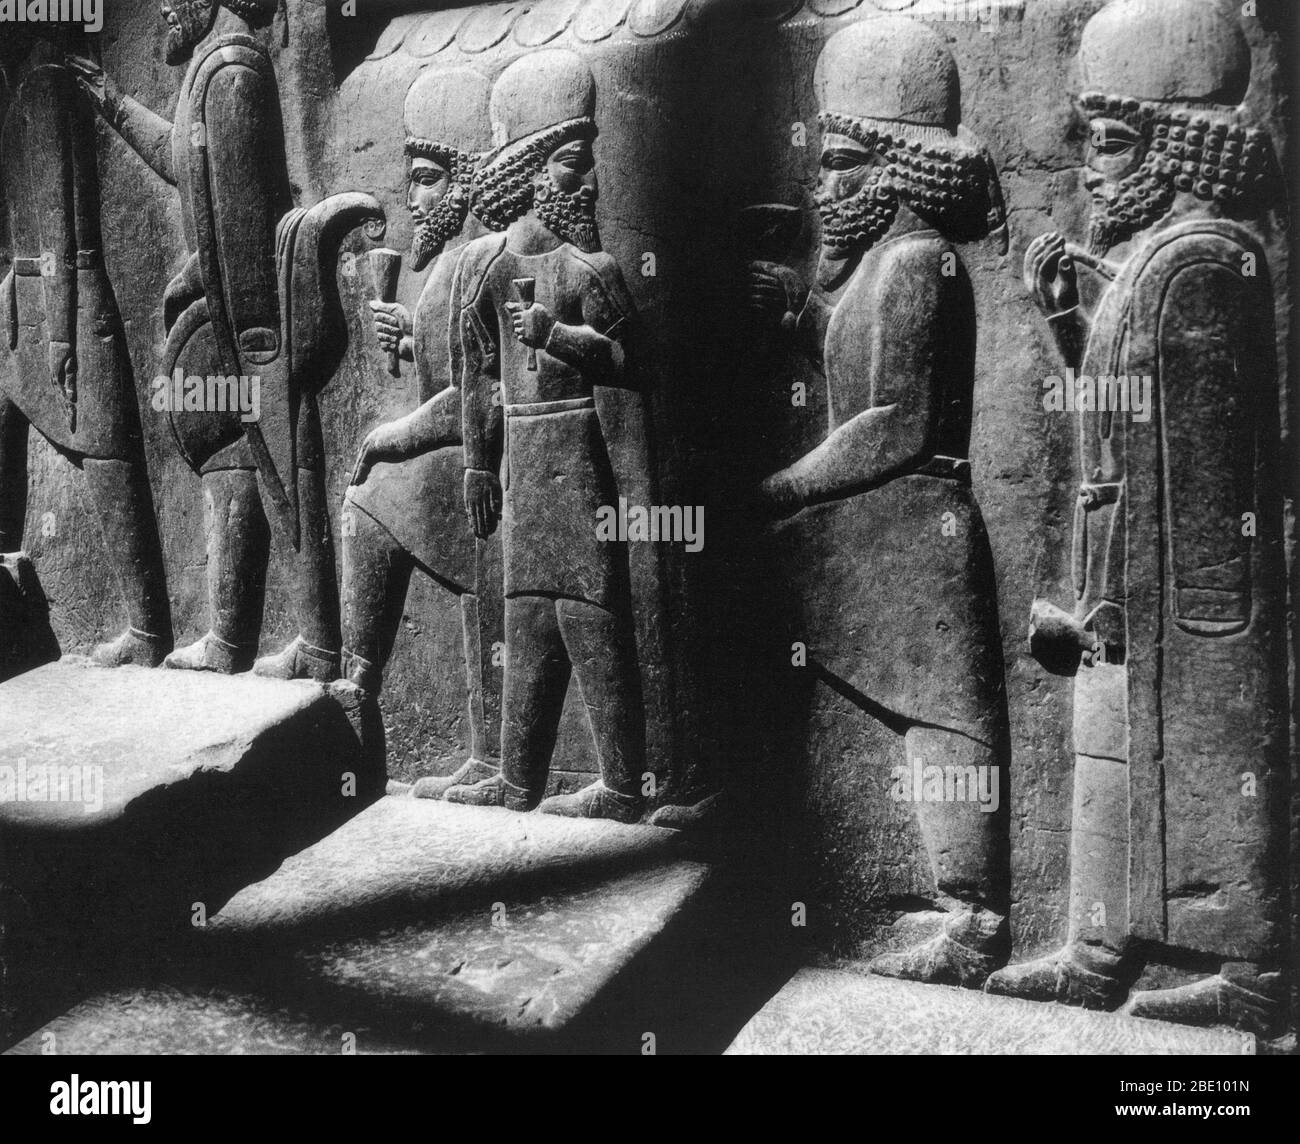 Tribut-Träger in einem Relief entlang der nördlichen Treppe der Ratssaal (Tripylon), in der alten persischen Hauptstadt Persepolis, Iran, ca. 500 v. Chr.. Stockfoto